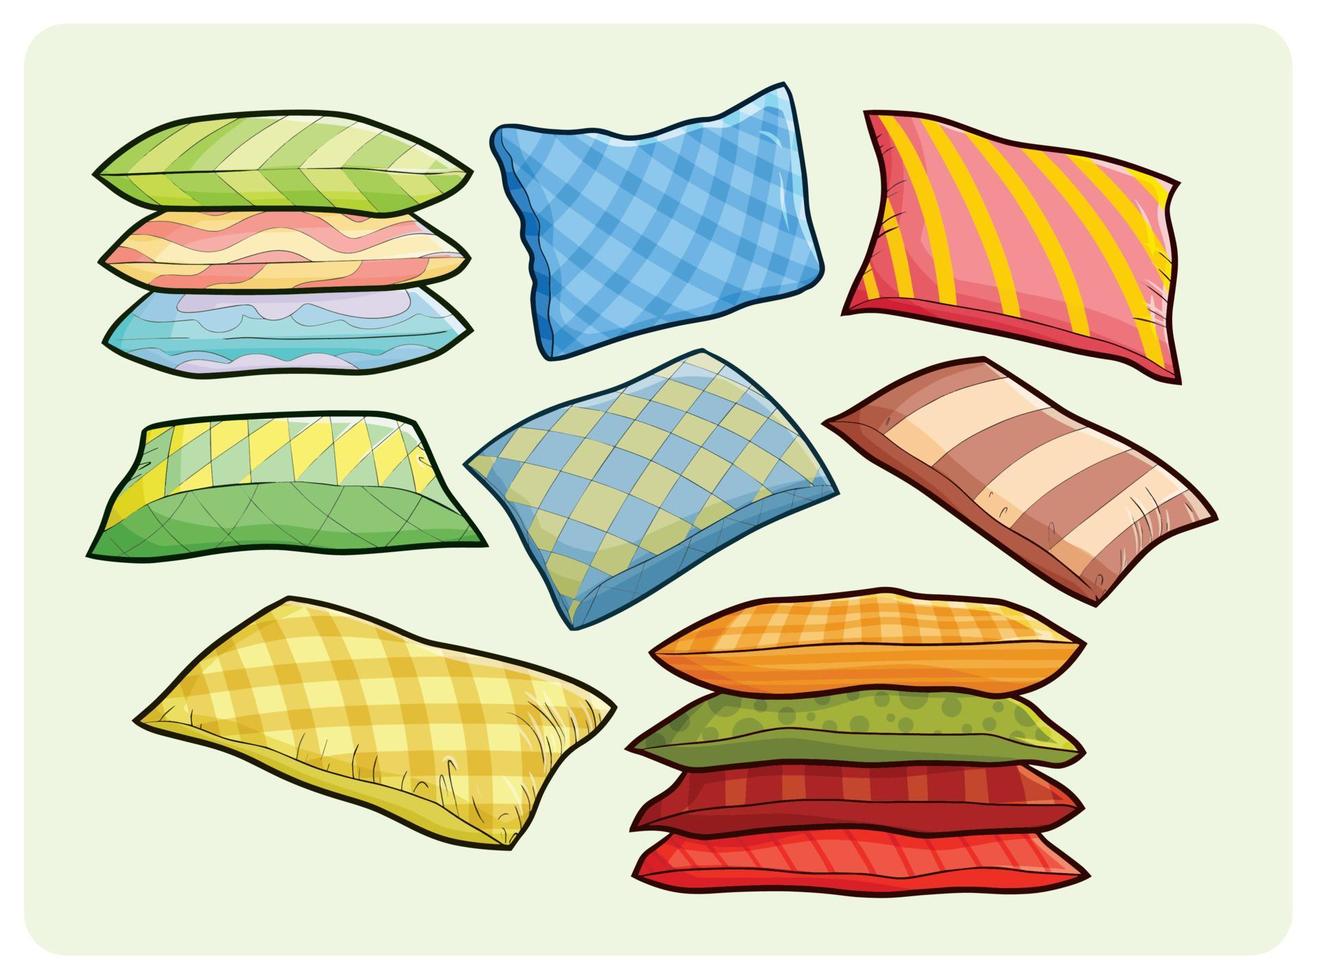 divertida colección de almohadas grandes y coloridas en estilo de dibujos animados simple vector